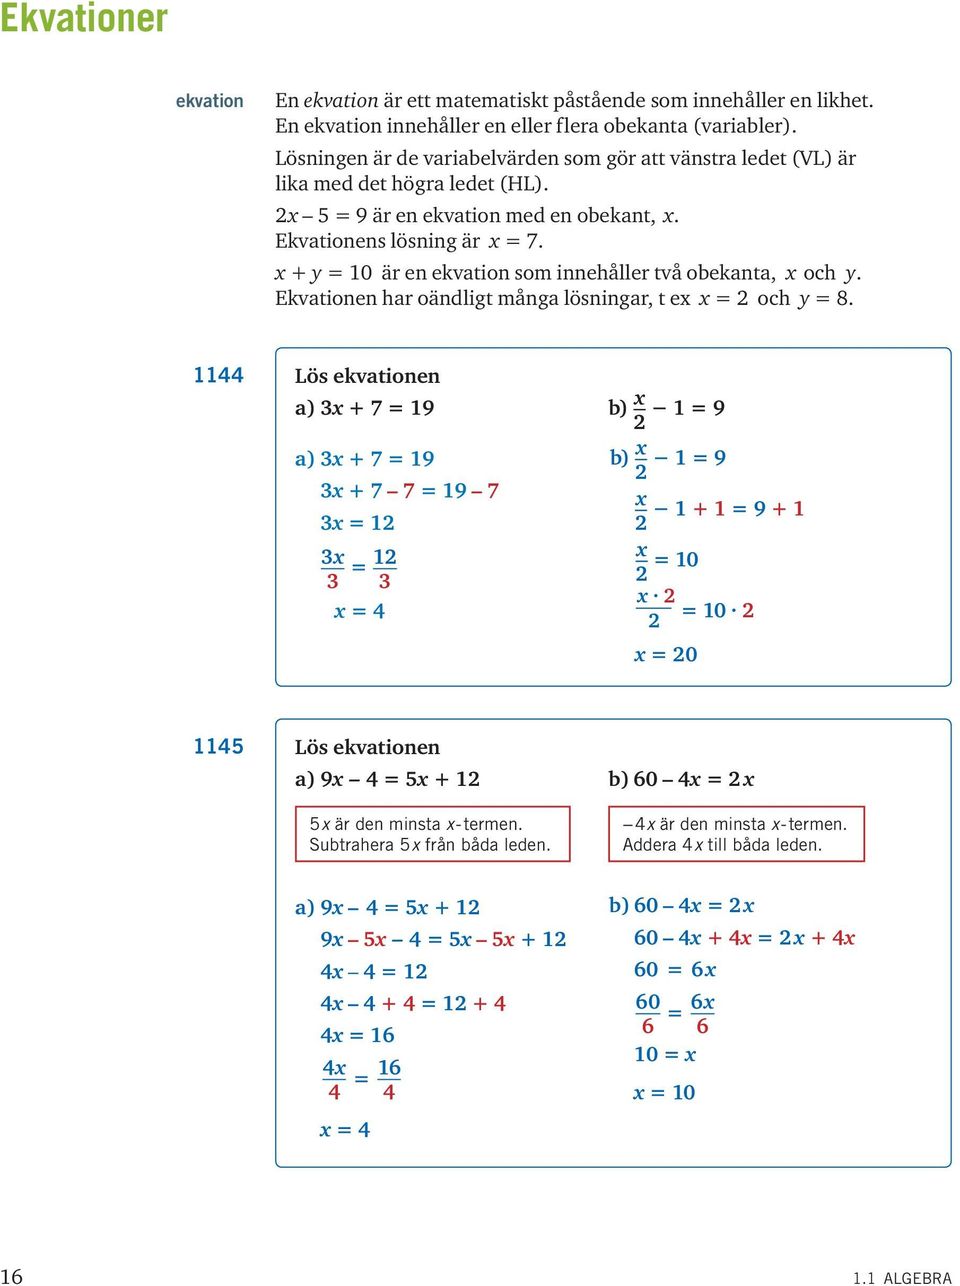 + = 0 är en ekvation som innehåller två obekanta, och. Ekvationen har oändligt många lösningar, t e = 2 och = 8.